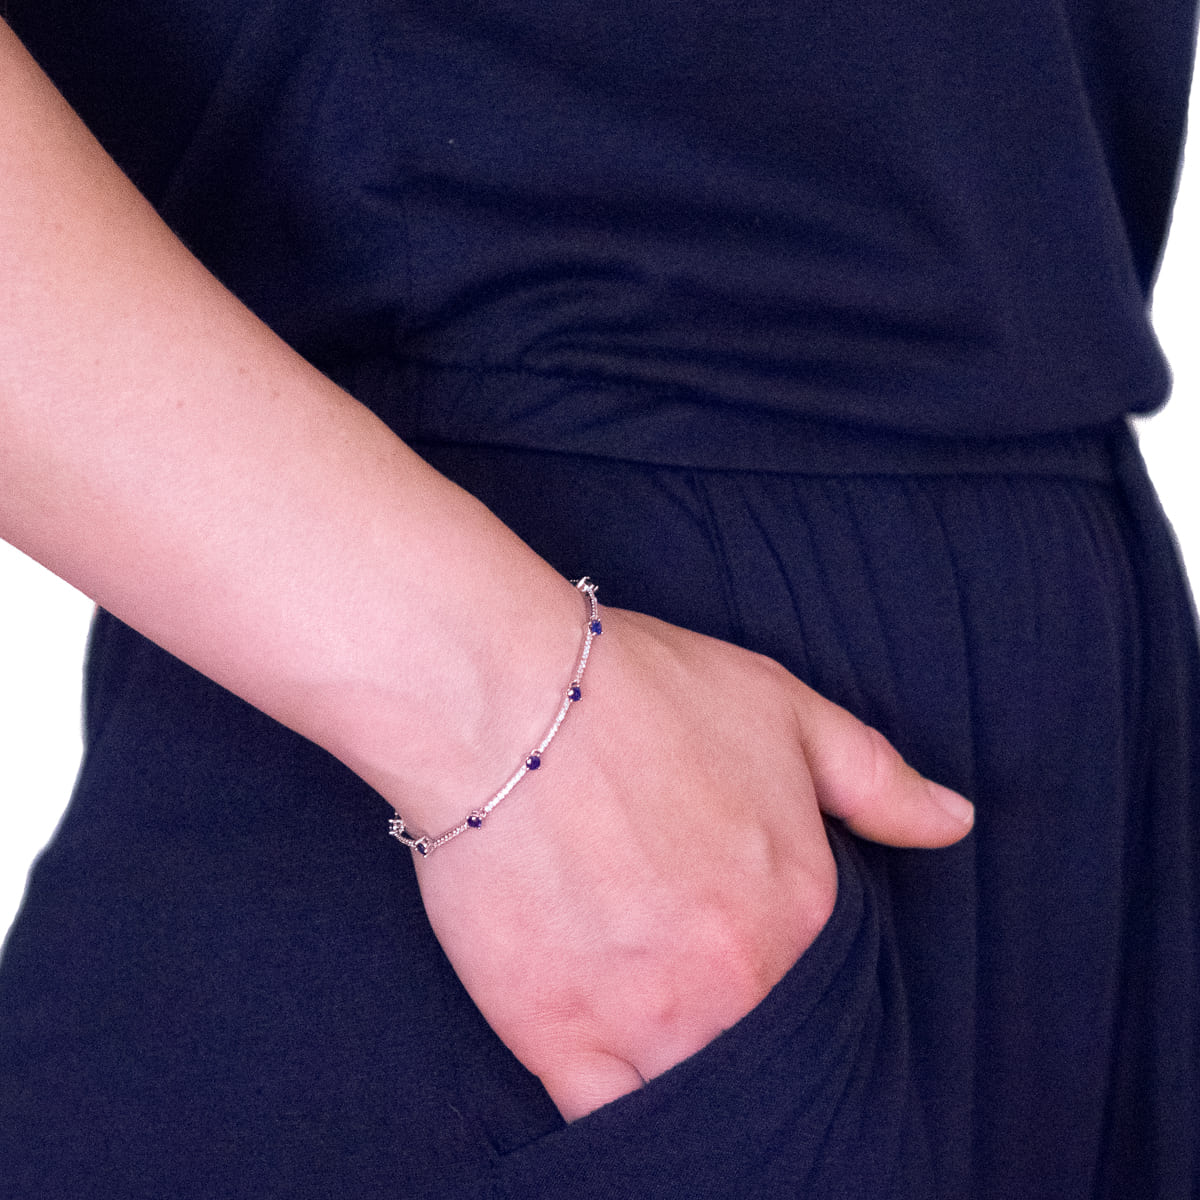 K.V. Fuchs Design Schmuck Damen Armband in silber mit Zirkonia in saphirblau-weiß »A-22-21«